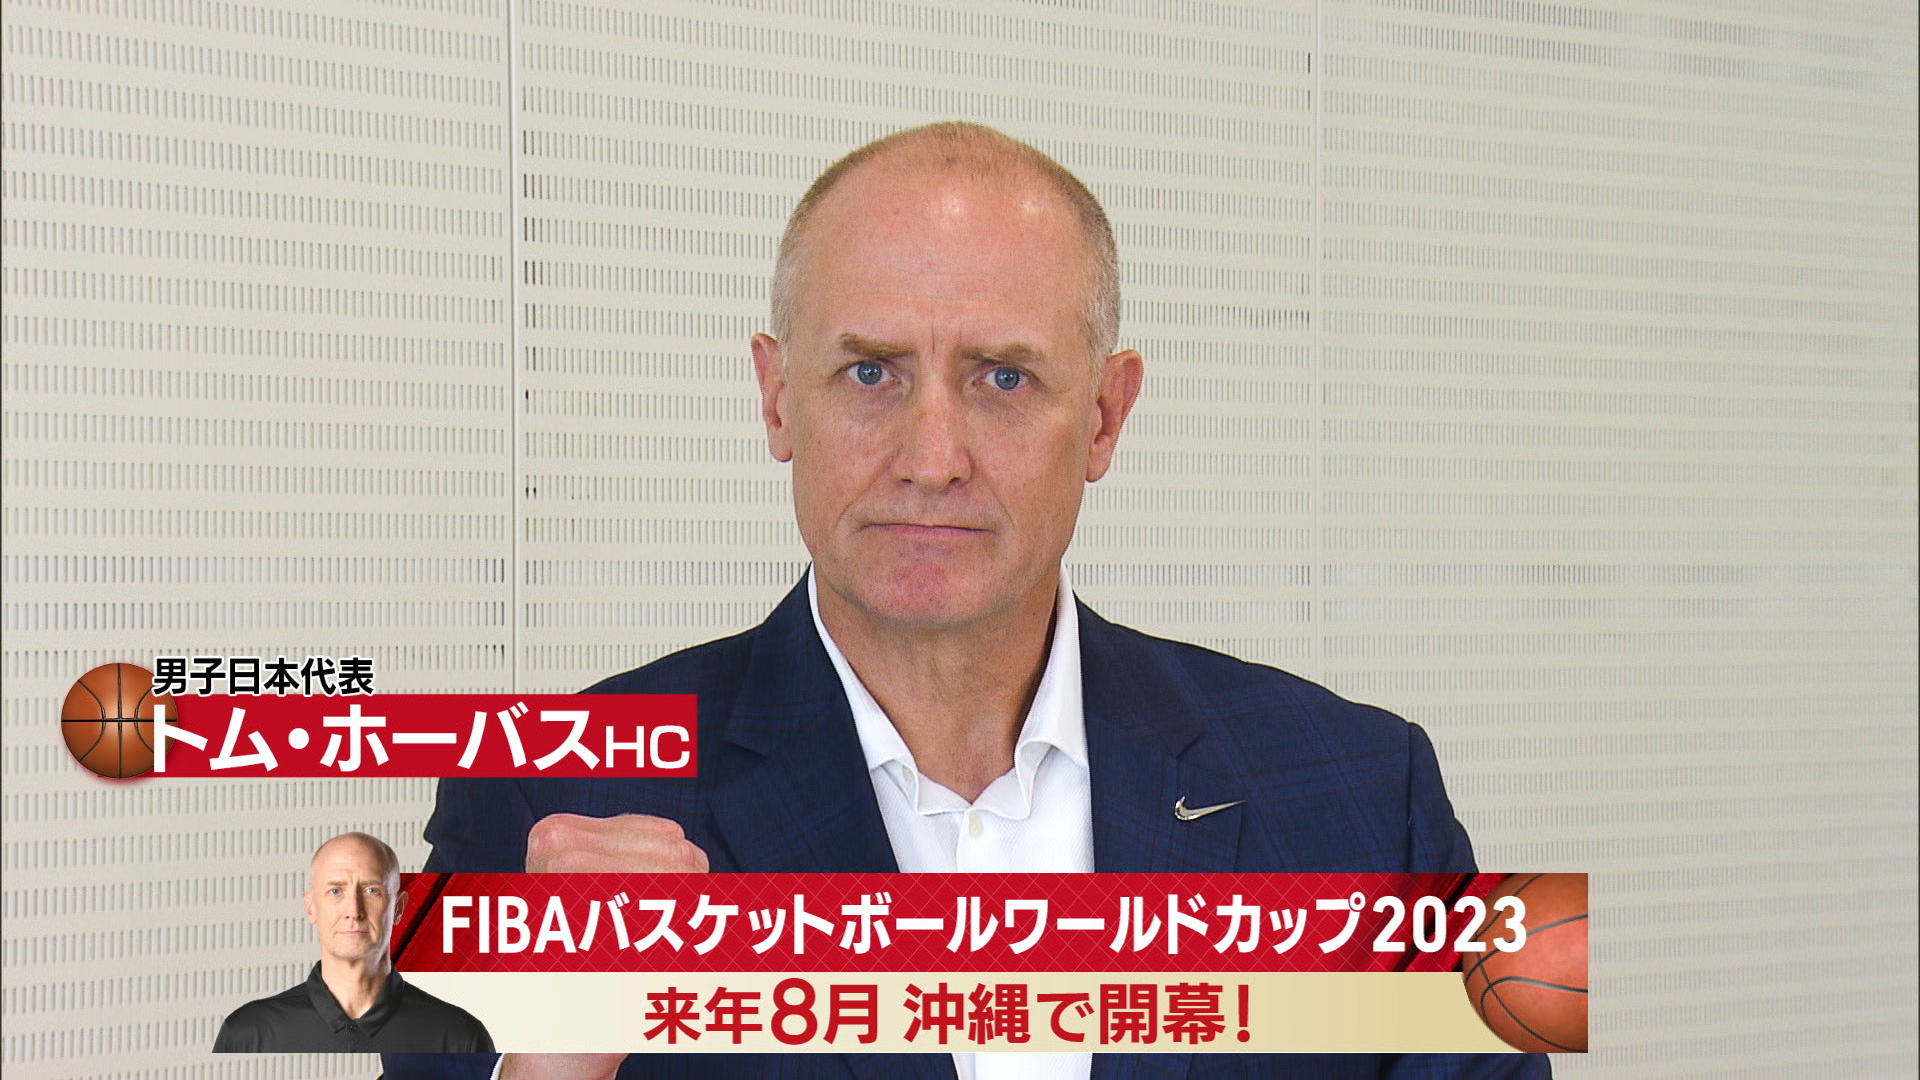 Fiba バスケットボールワールドカップ23アジア予選 テレビ朝日